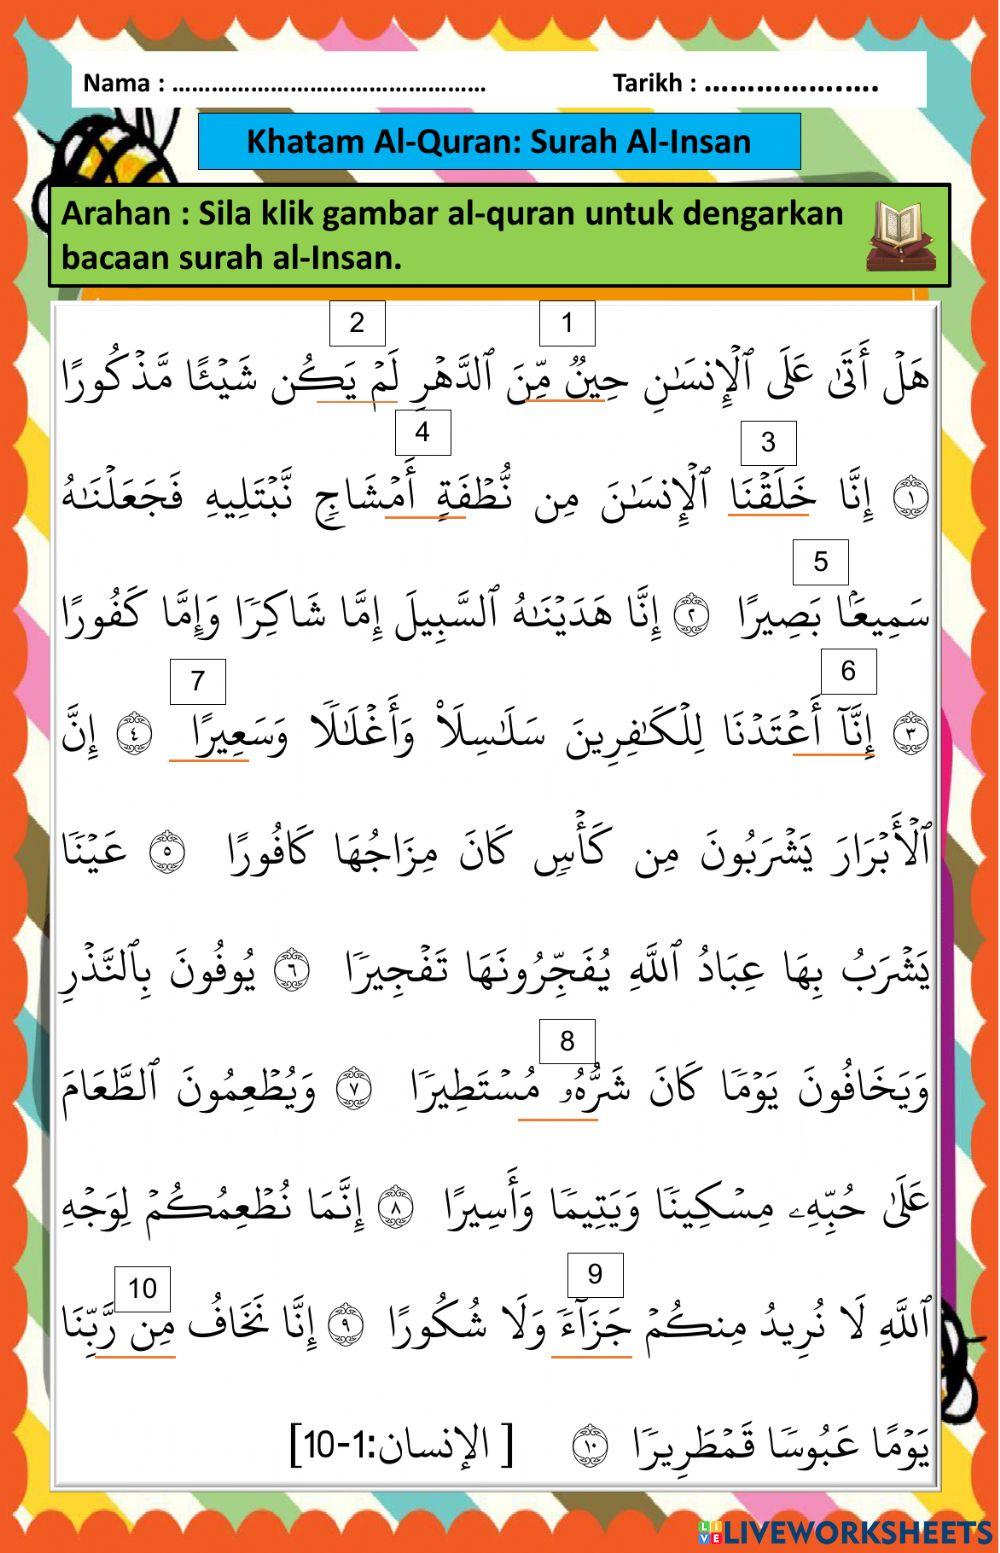 Khatam Al-Quran (Surah Al-Insan)